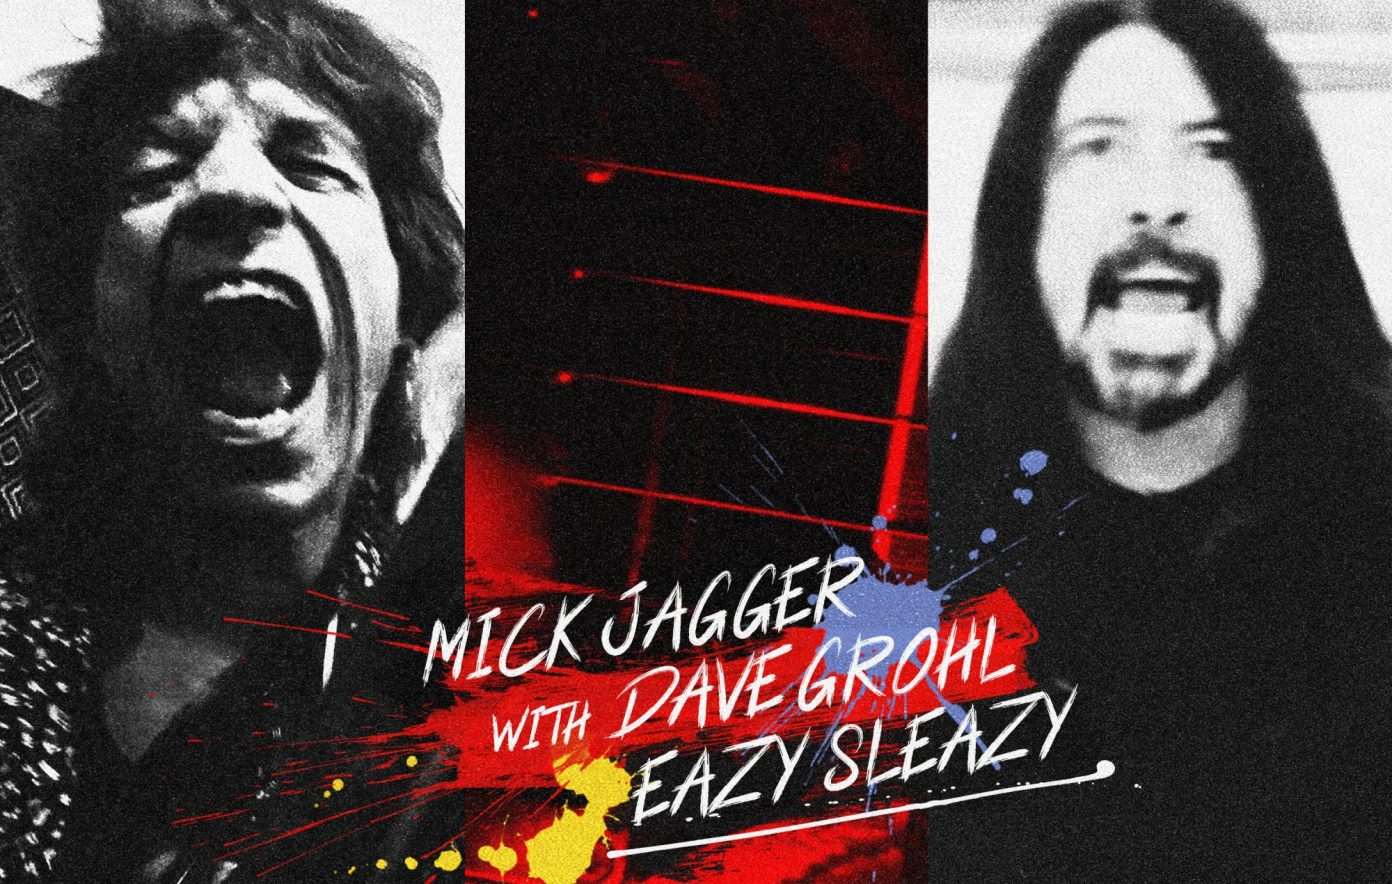 Mick Jagger y Dave Grohl lanzan por sorpresa el single conjunto “Eazy Sleazy”